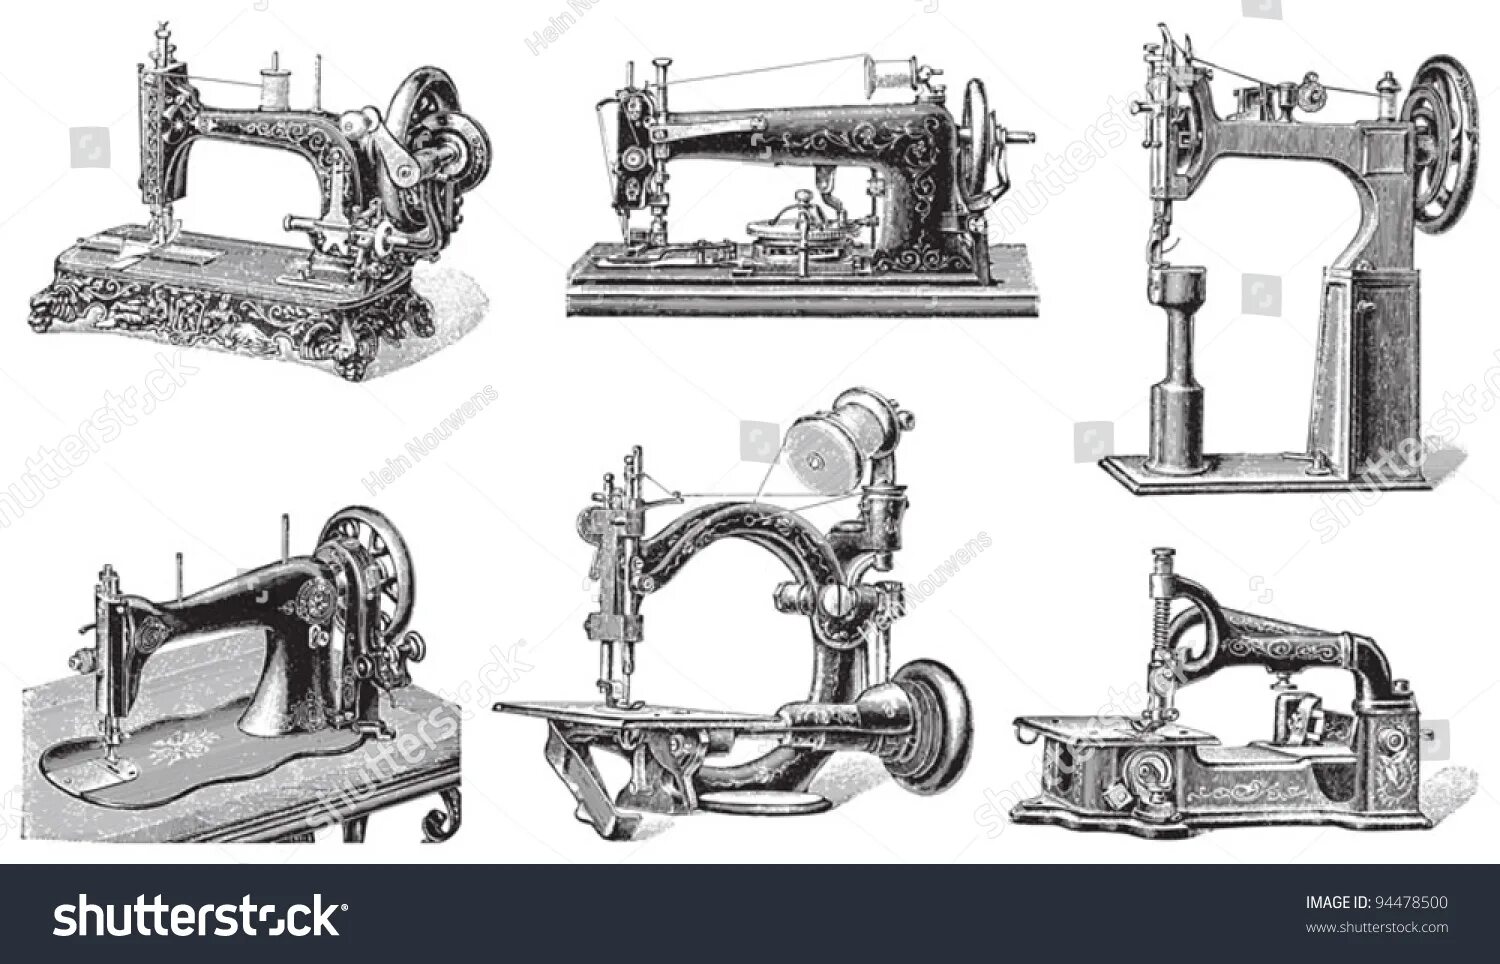 Вал швейной машинки за минуту делает. Первый проект швейной машины Леонардо да Винчи. Швейная машинка изобретение 19 века. Швейная машинка Леонардо да Винчи. Швейная машина Келлер ножная.